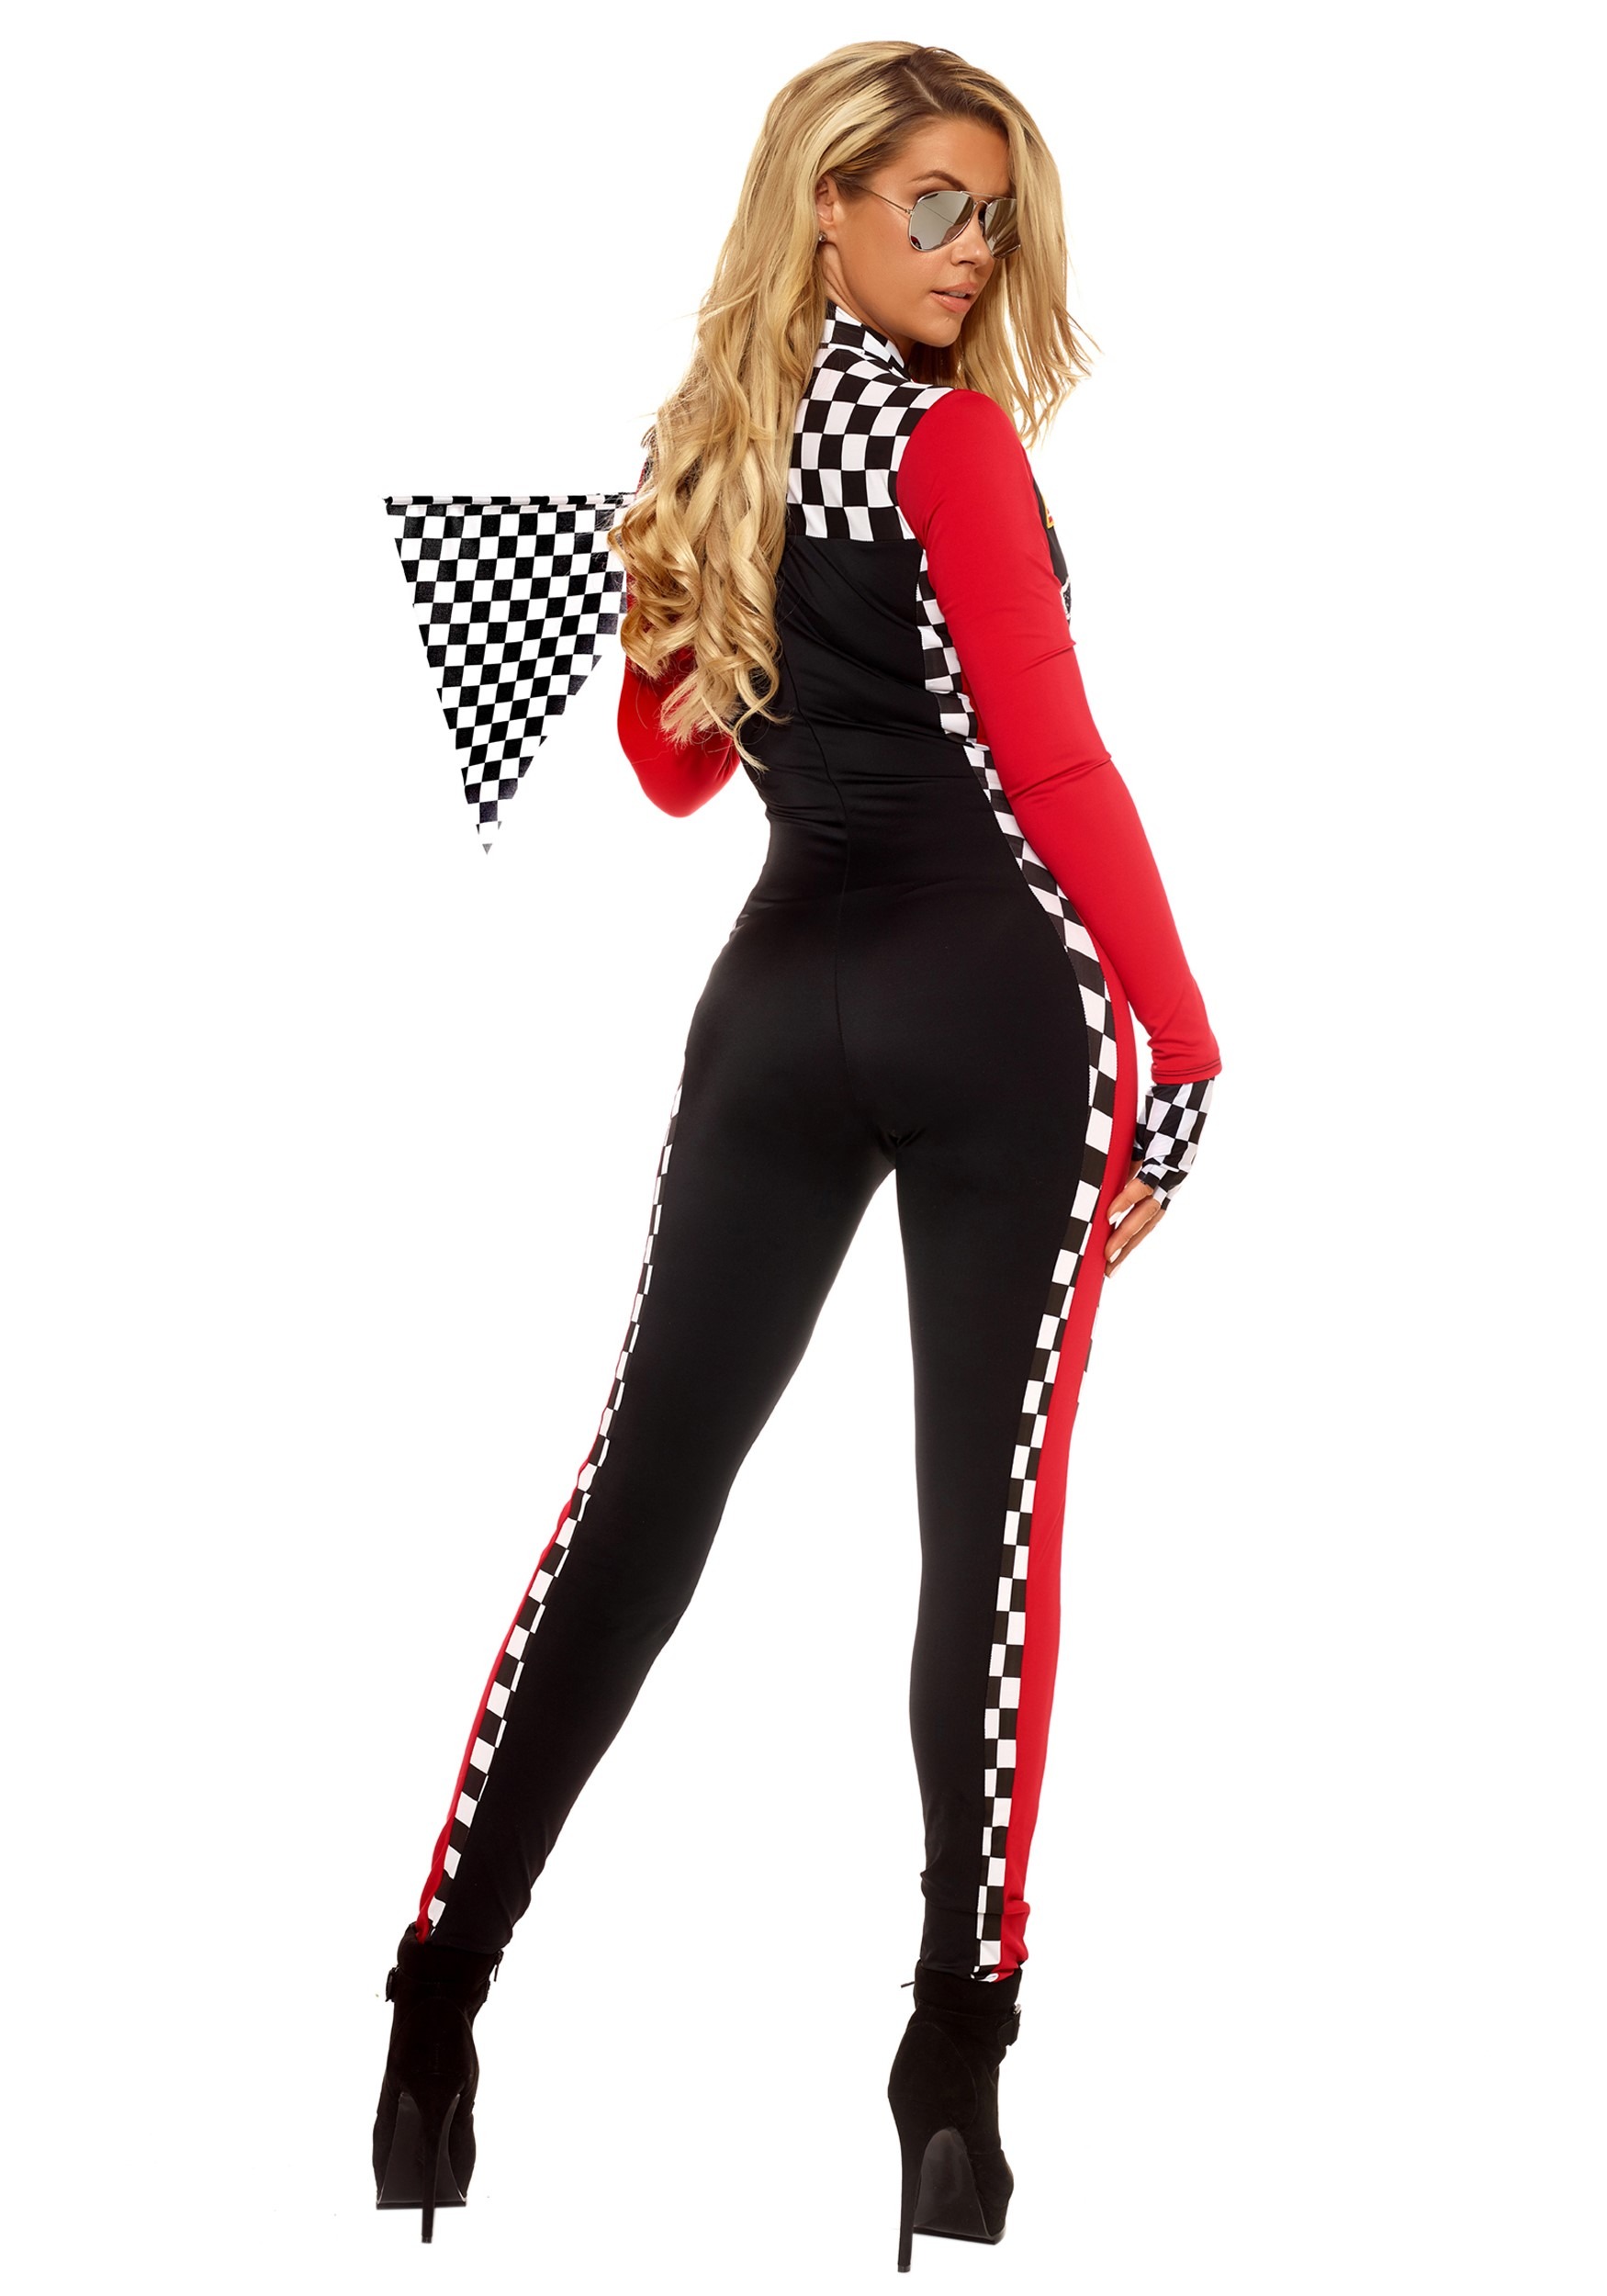 Top Speed Women's Costume